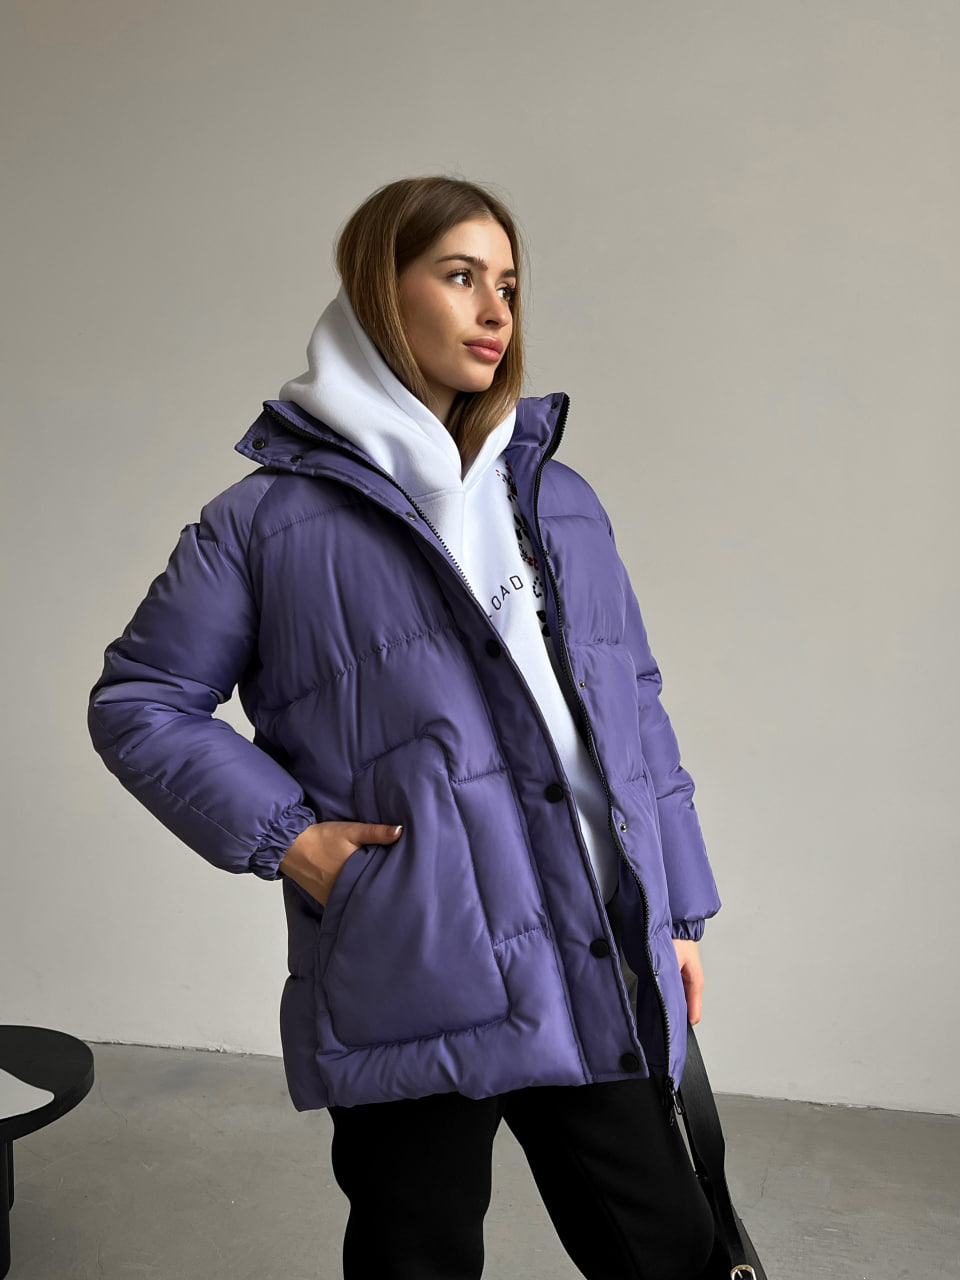 Женская зимняя куртка-пуховик Reload Elly фиолетовая / Зимний короткий пуховик оверсайз стильный теплый - Фото 1